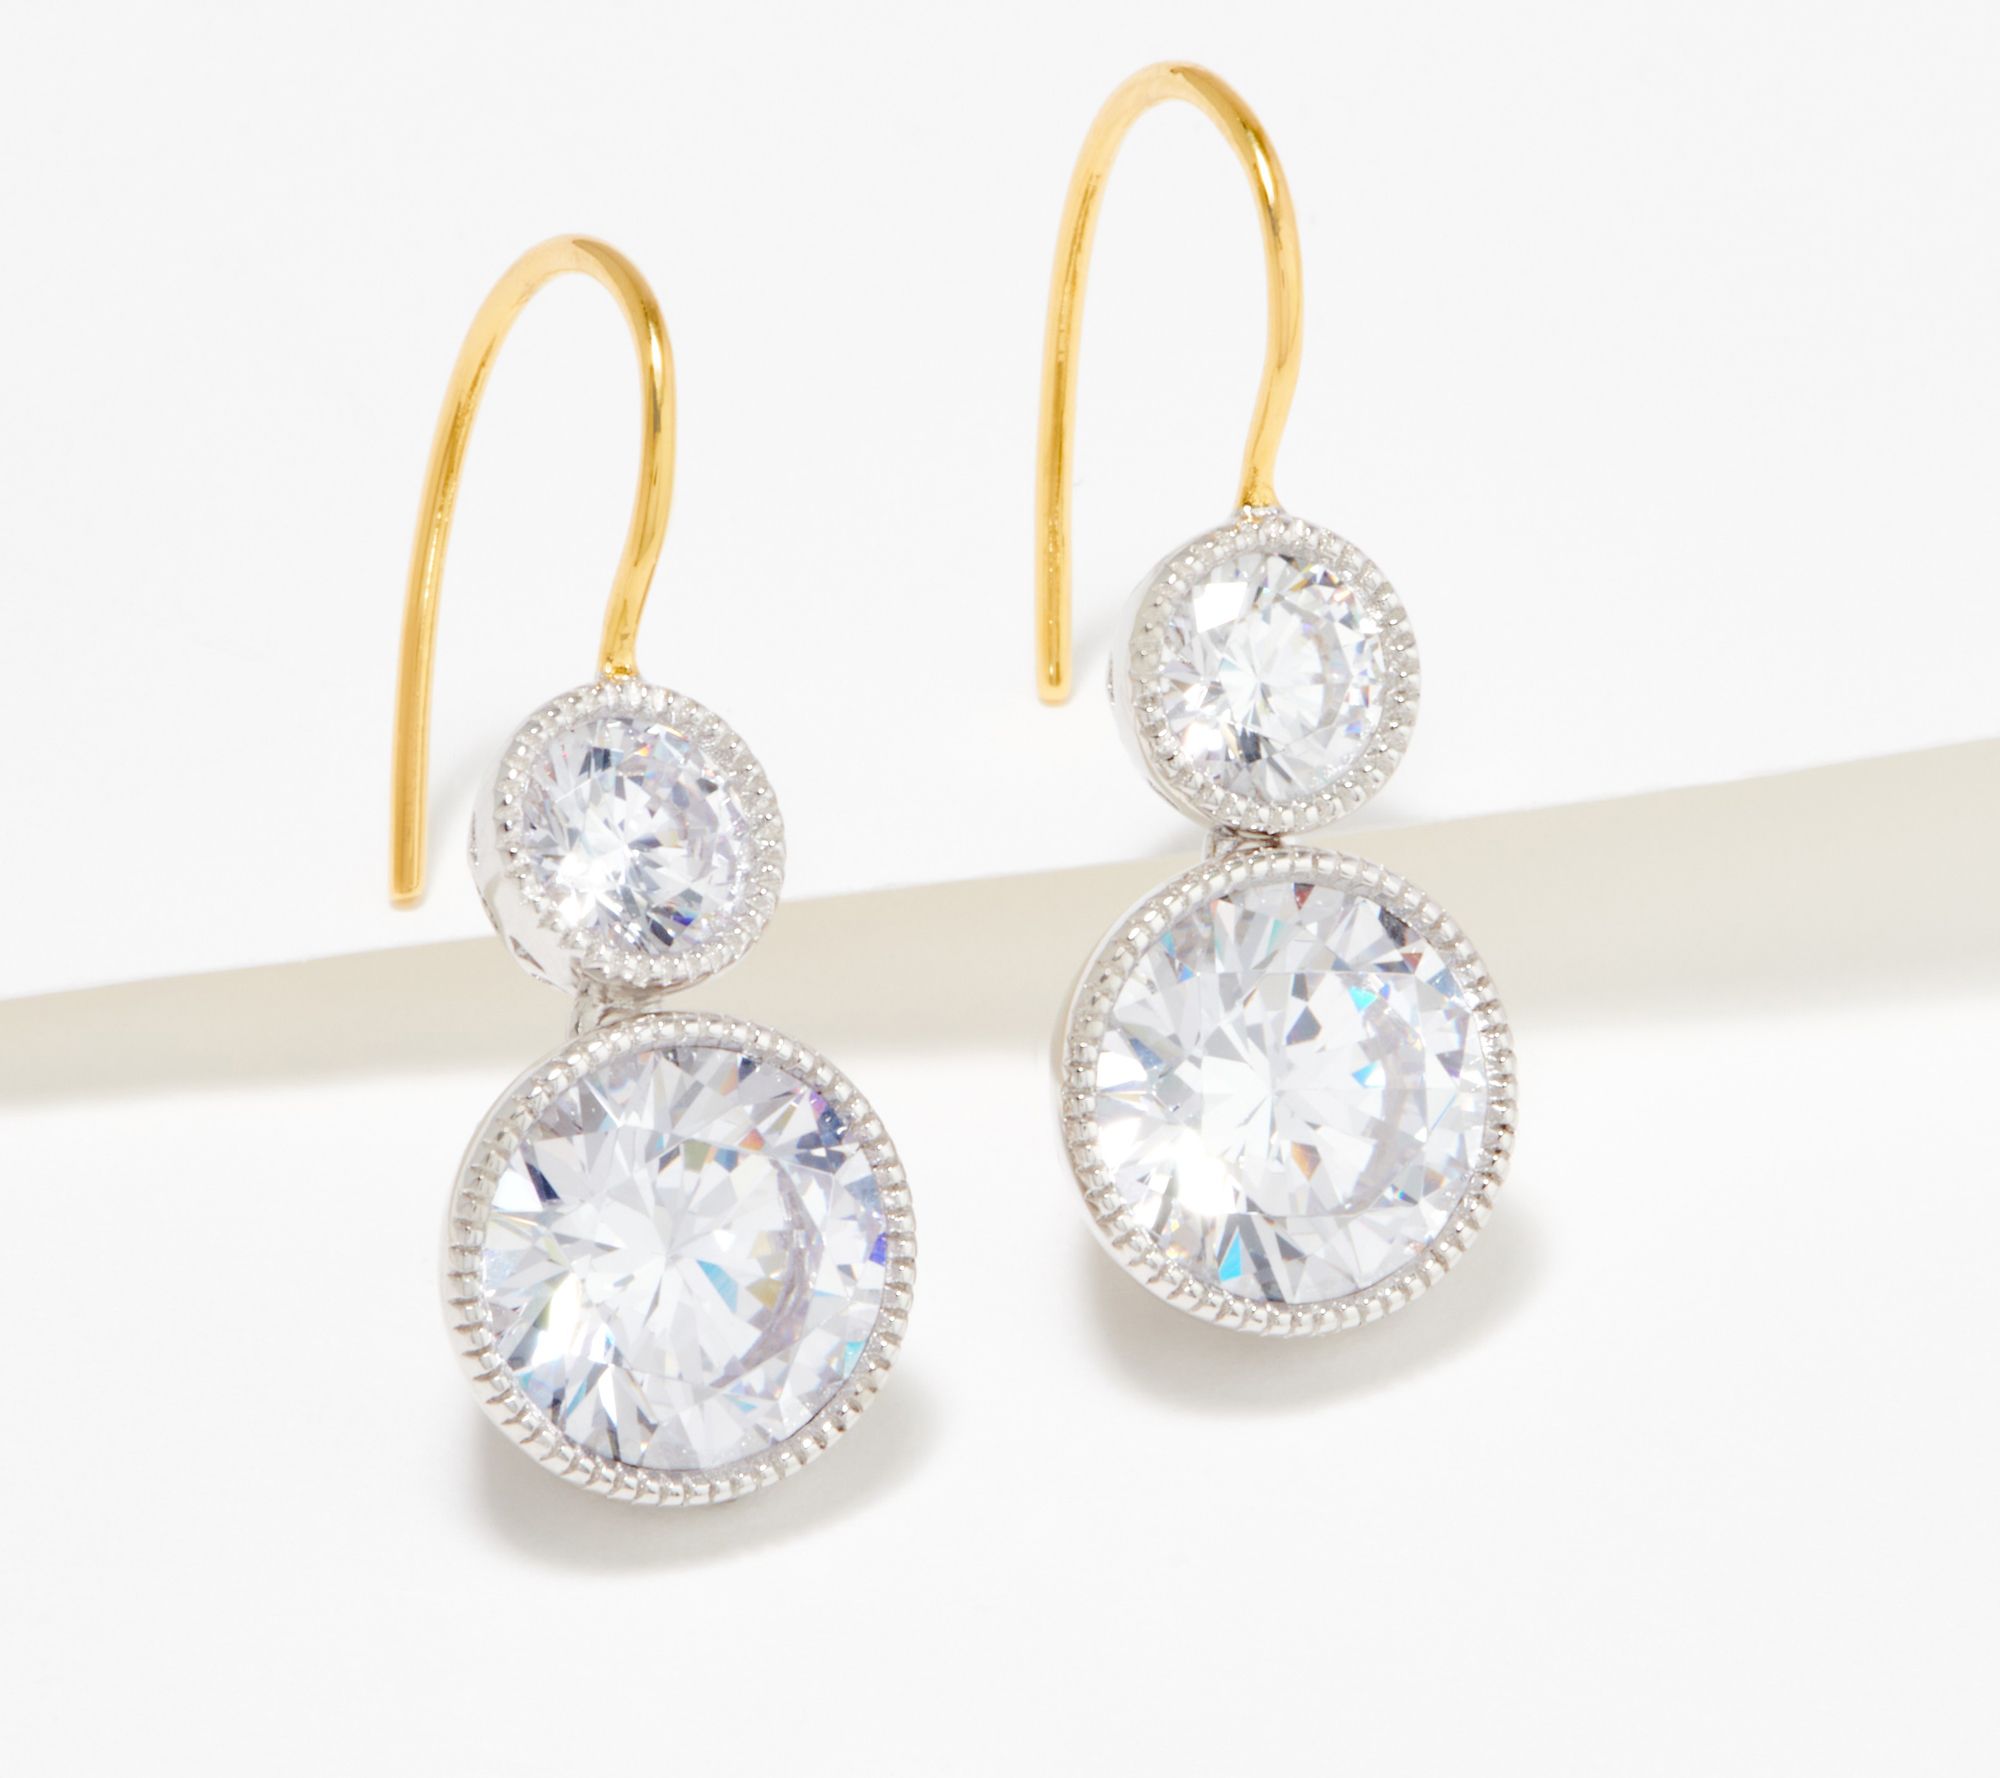 Sterling Silver Bridal Wedding Vintage Inspired CZ Drop Earrings RRP $150 